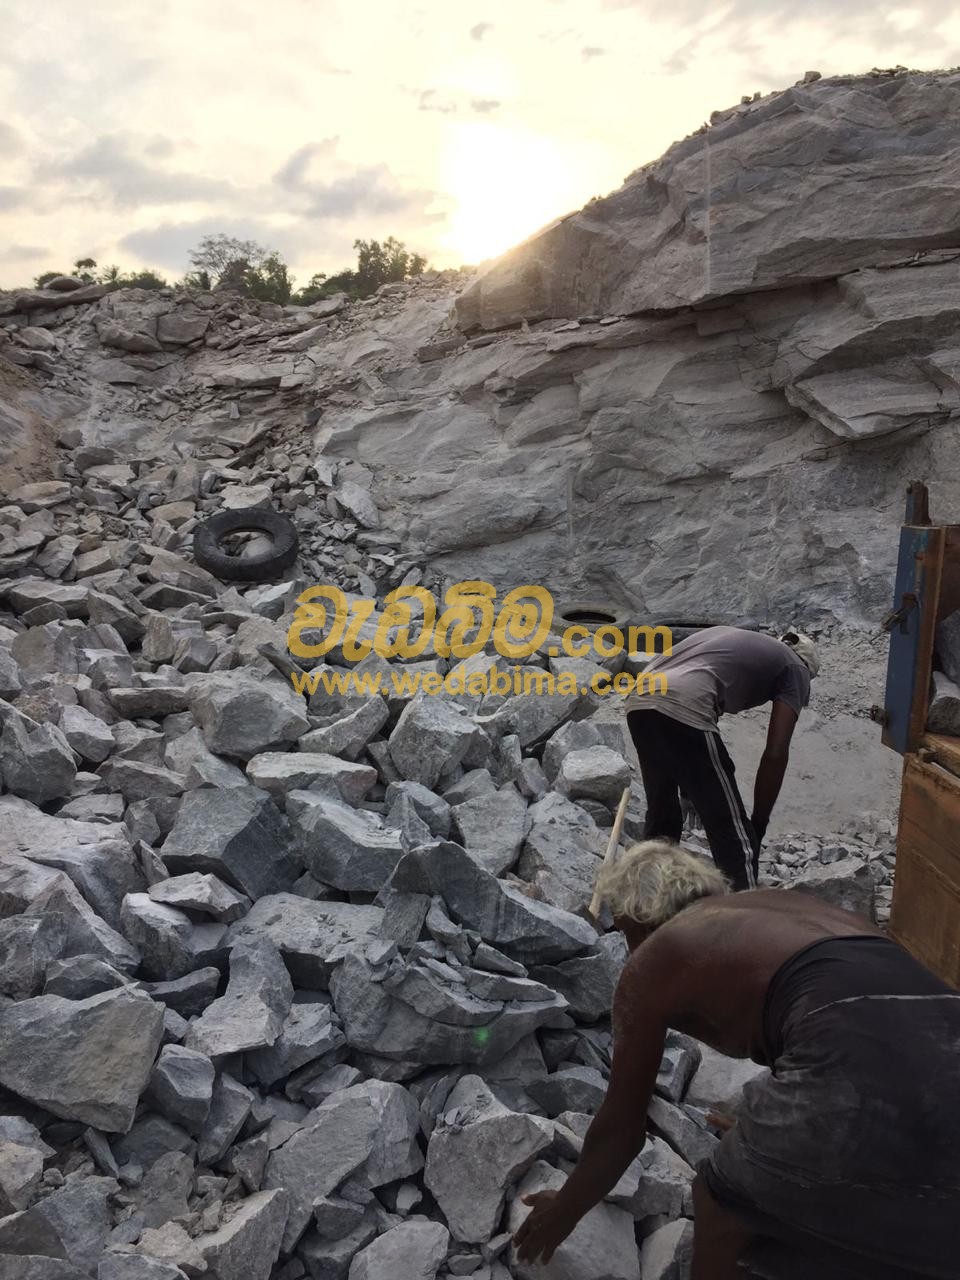 Rubble Stone Price in Sri Lanka